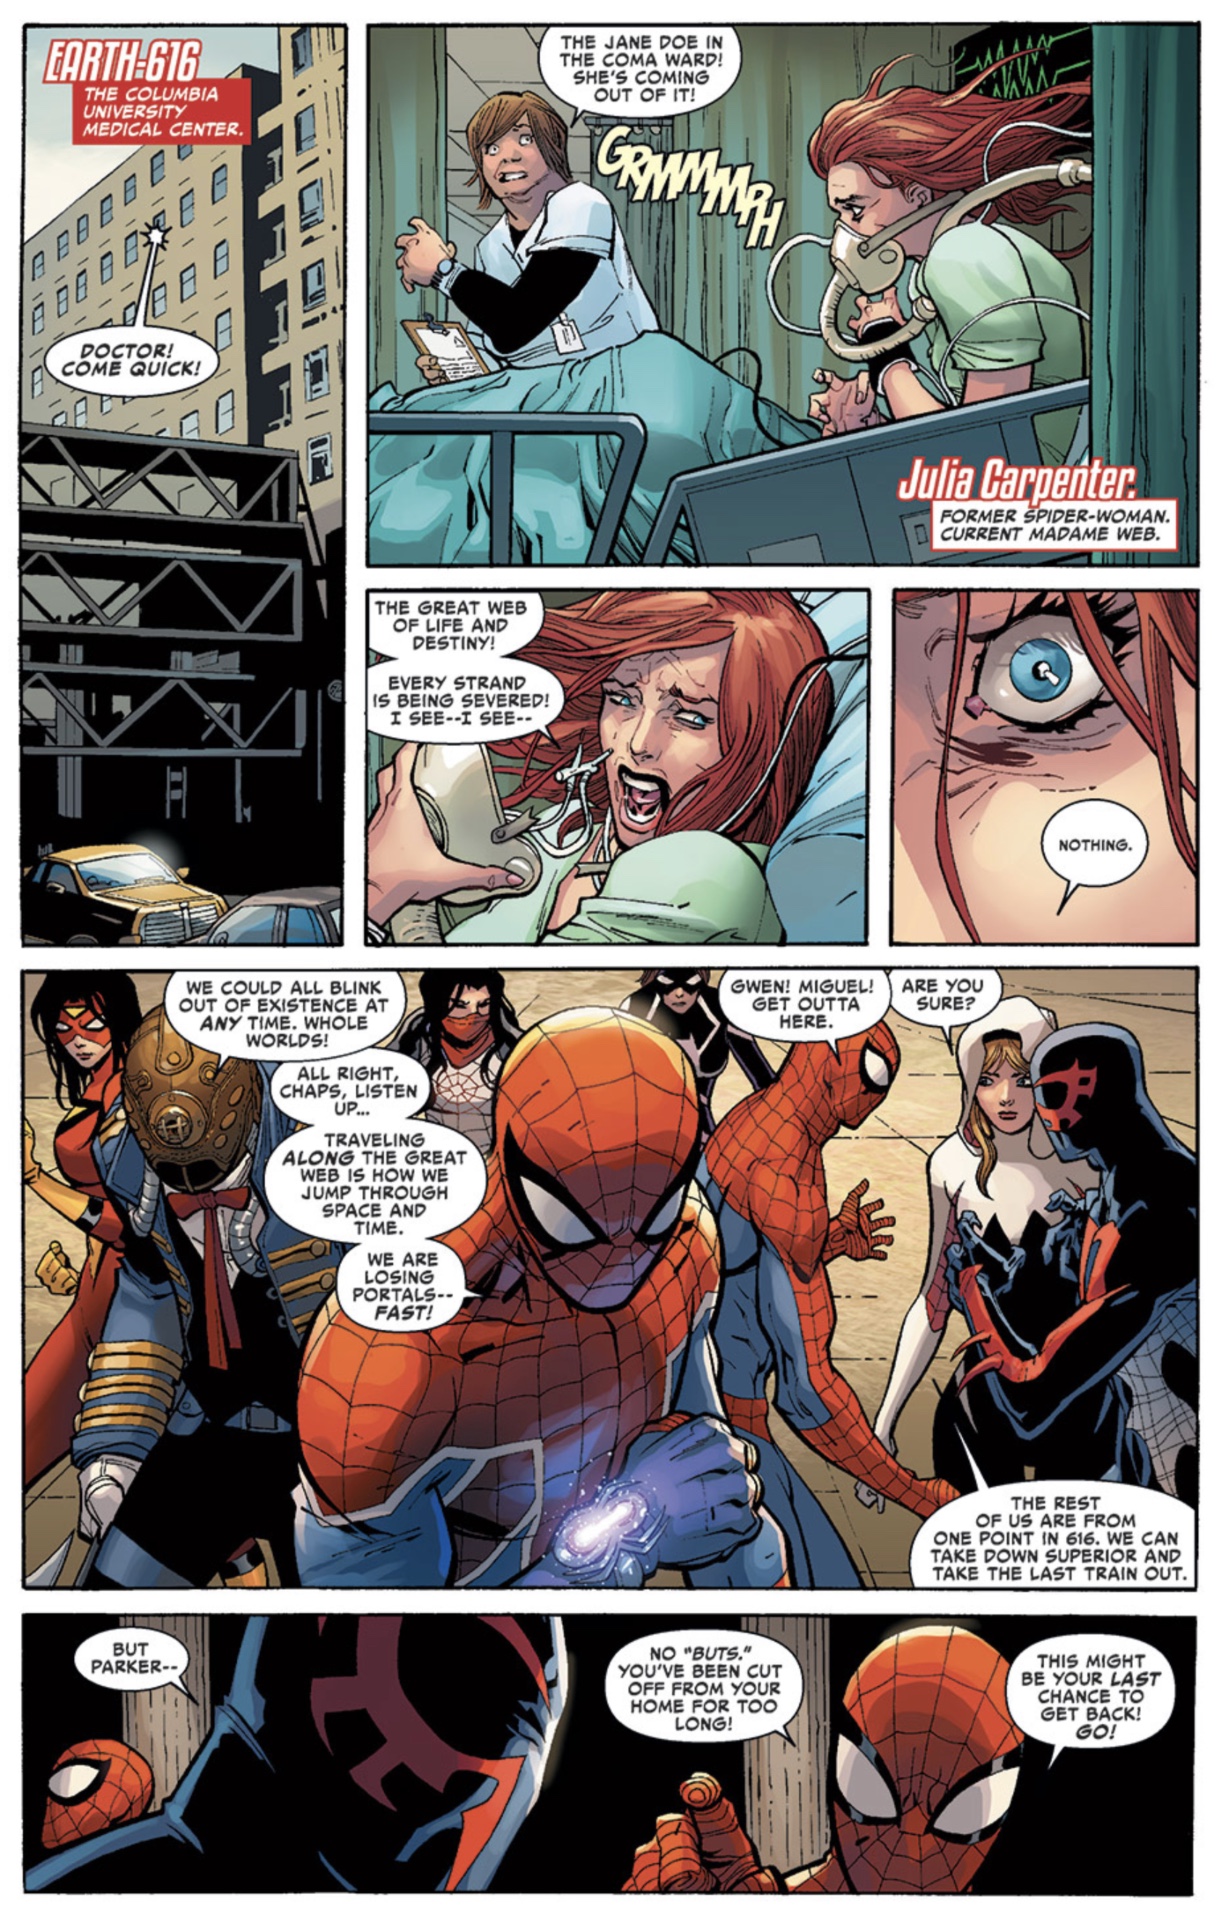 Amazing Spider-Man #15 strana